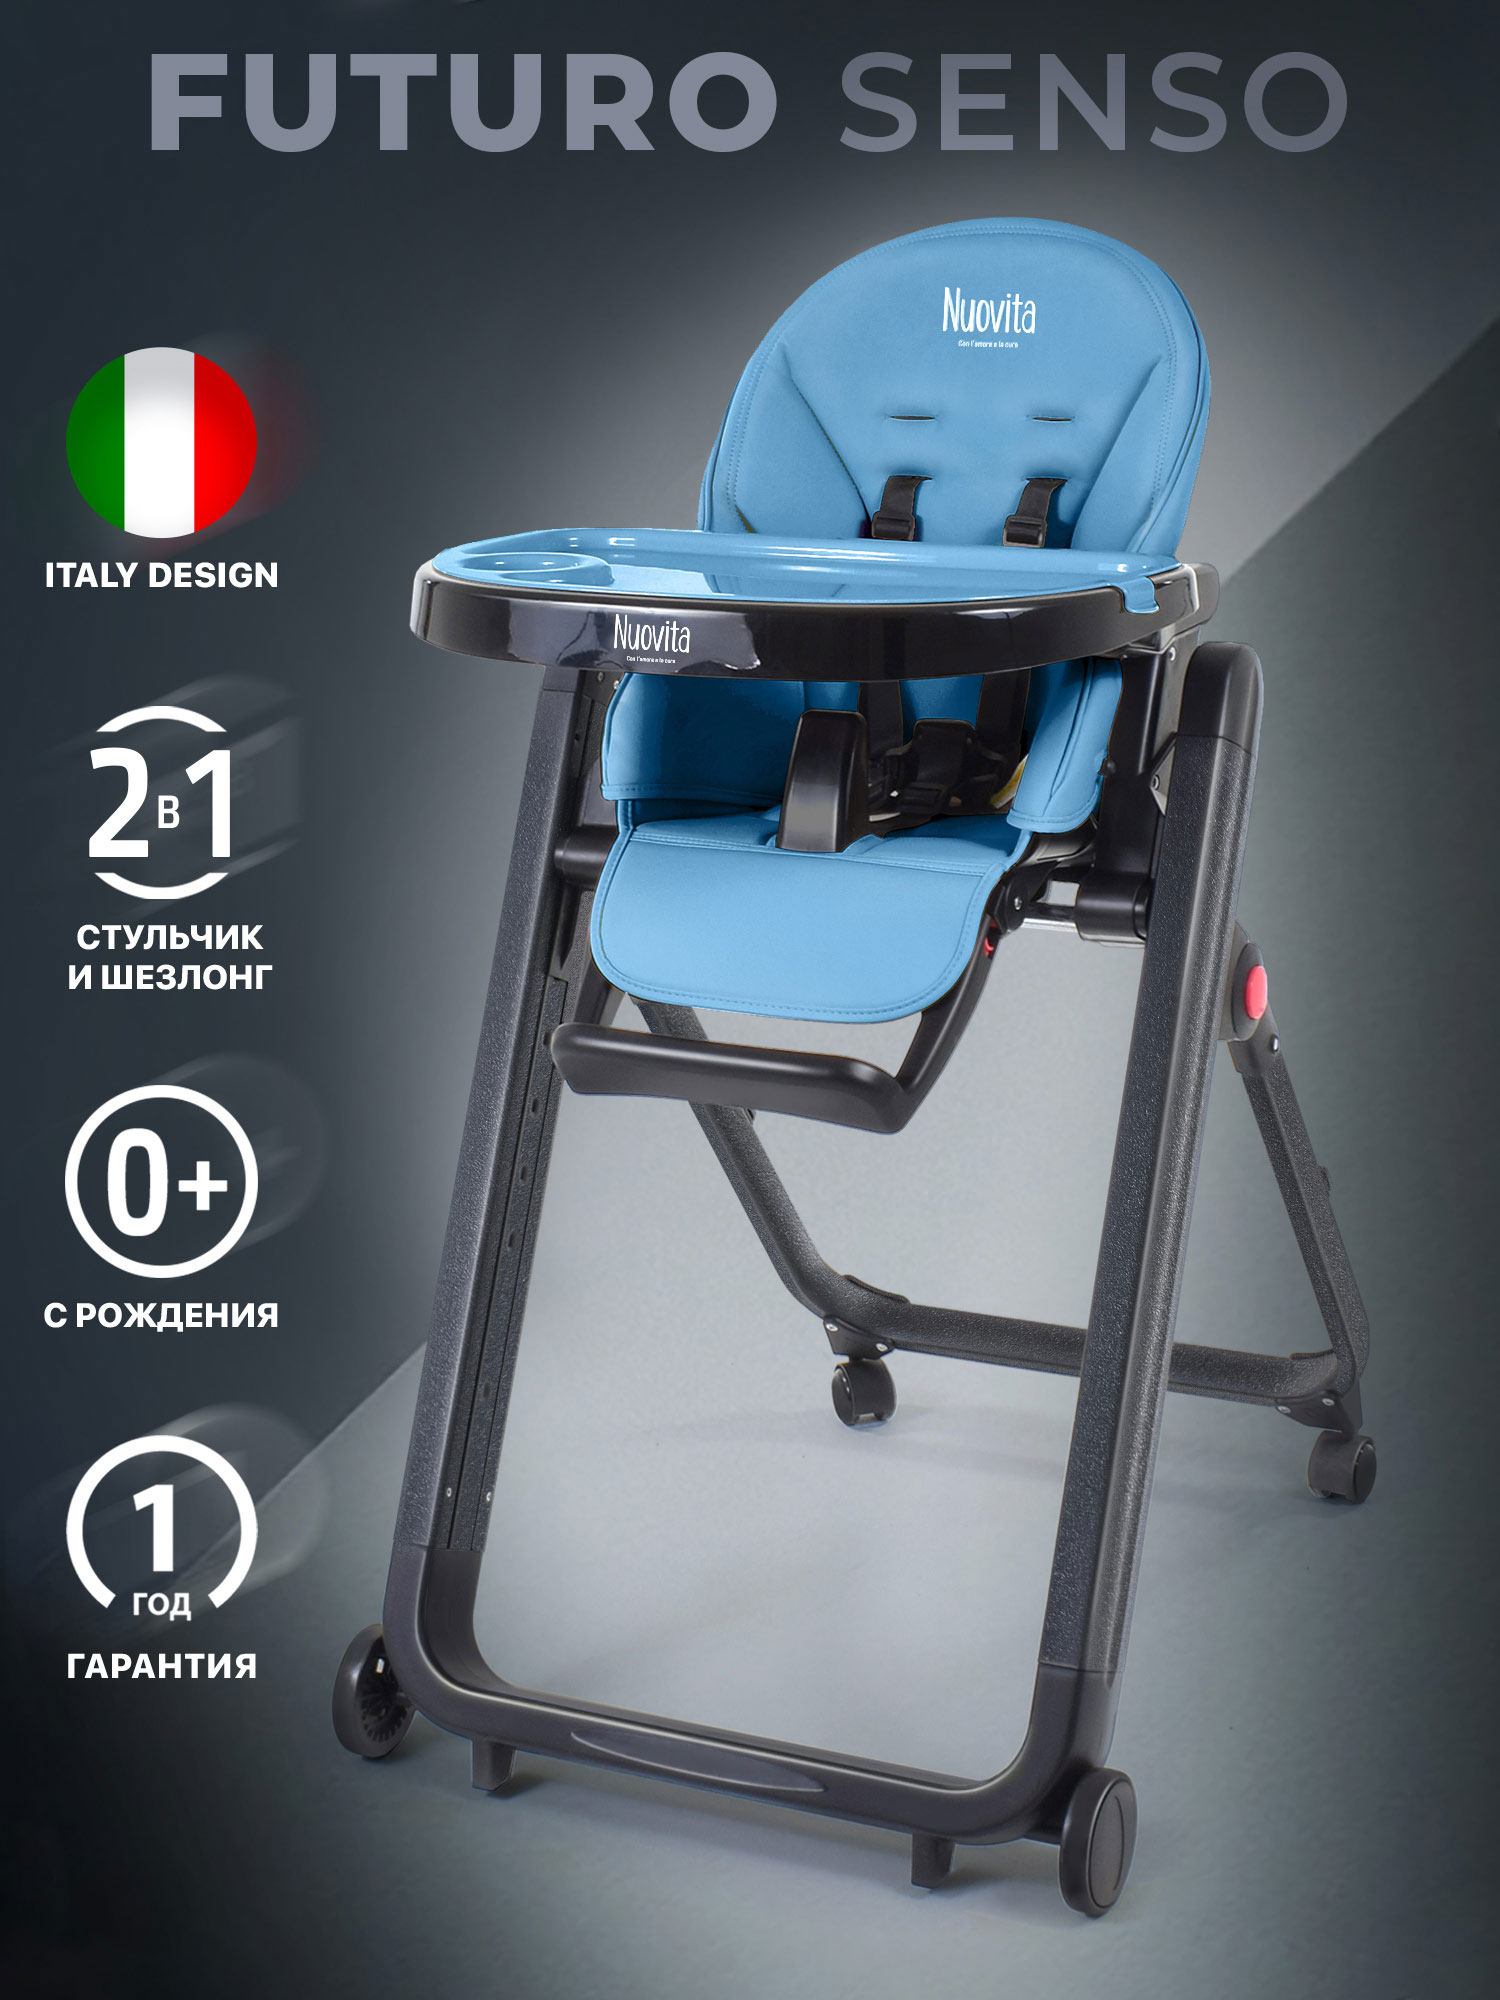 Стульчик для кормления Nuovita Futuro Senso Nero (Blu/Синий) стульчик для кормления nuovita futuro senso nero marino морской